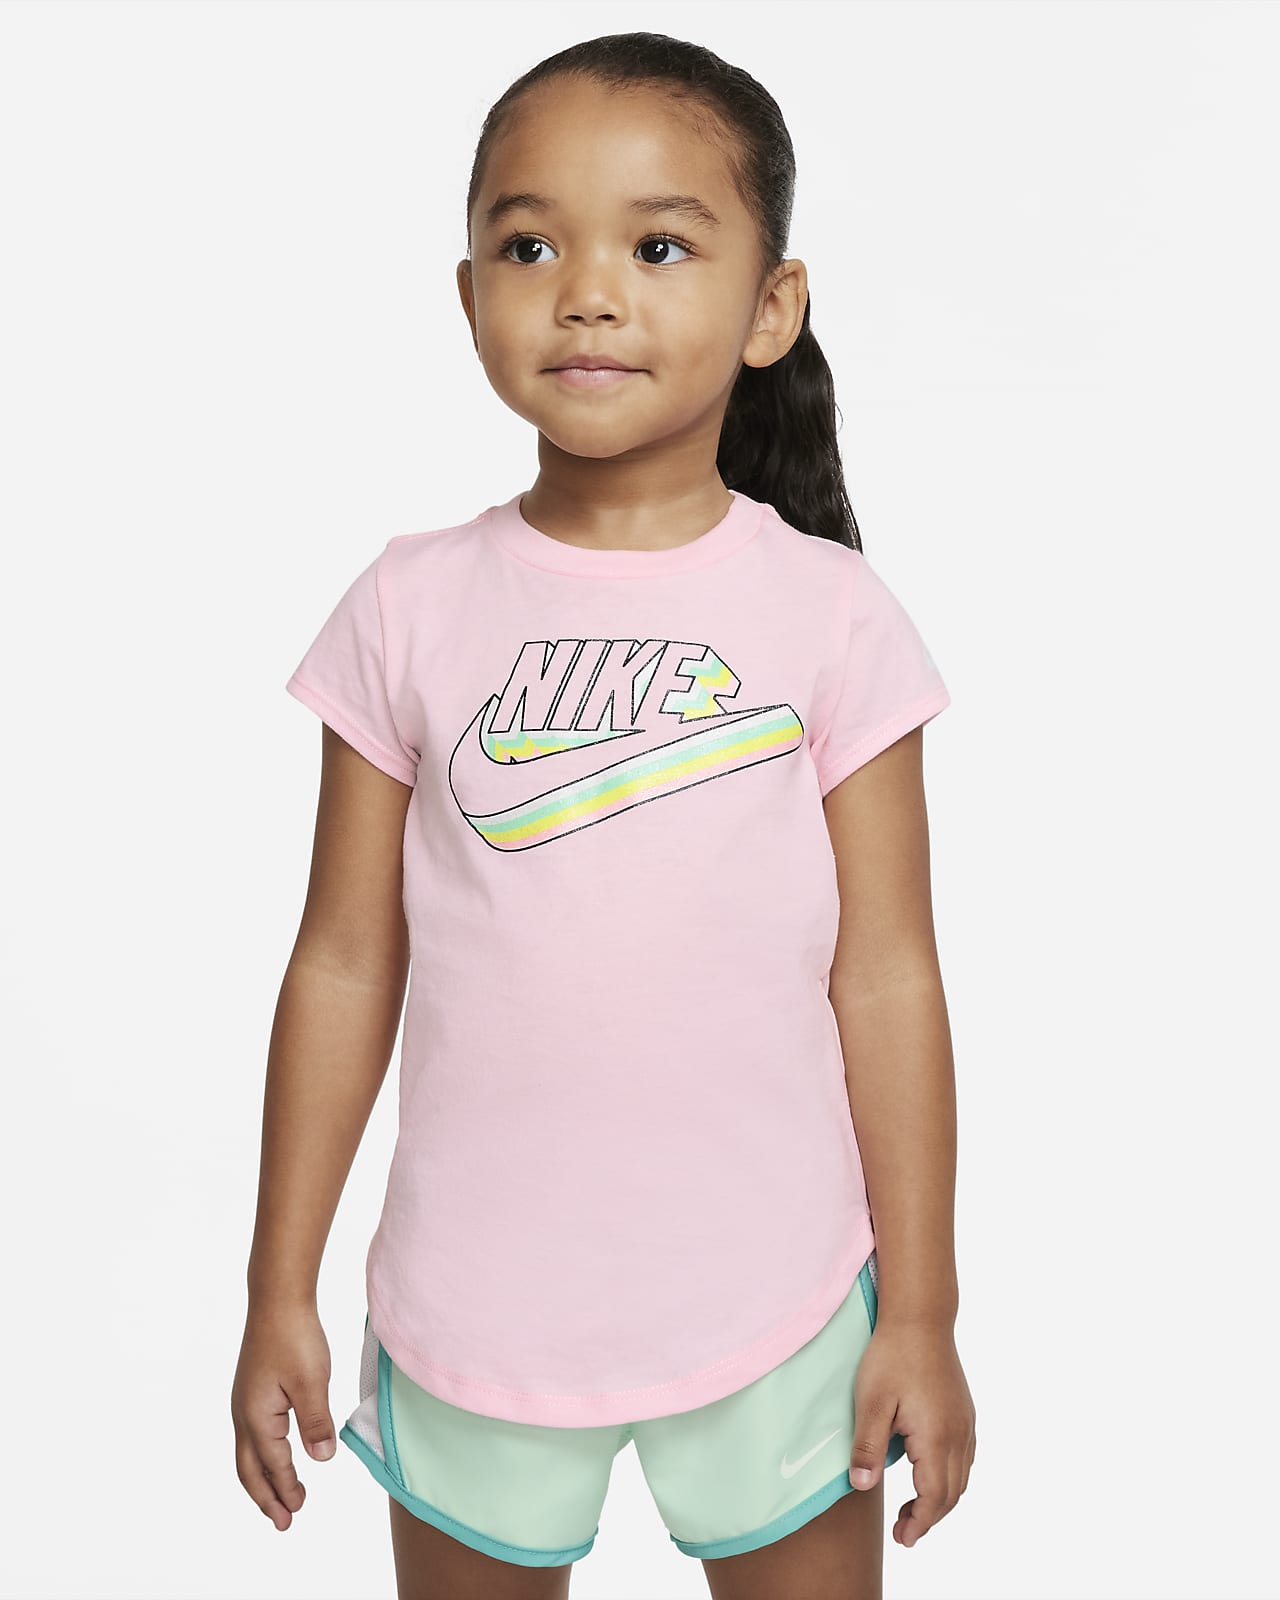 Ninguna Excelente adoptar Nike Toddler T-Shirt. Nike.com